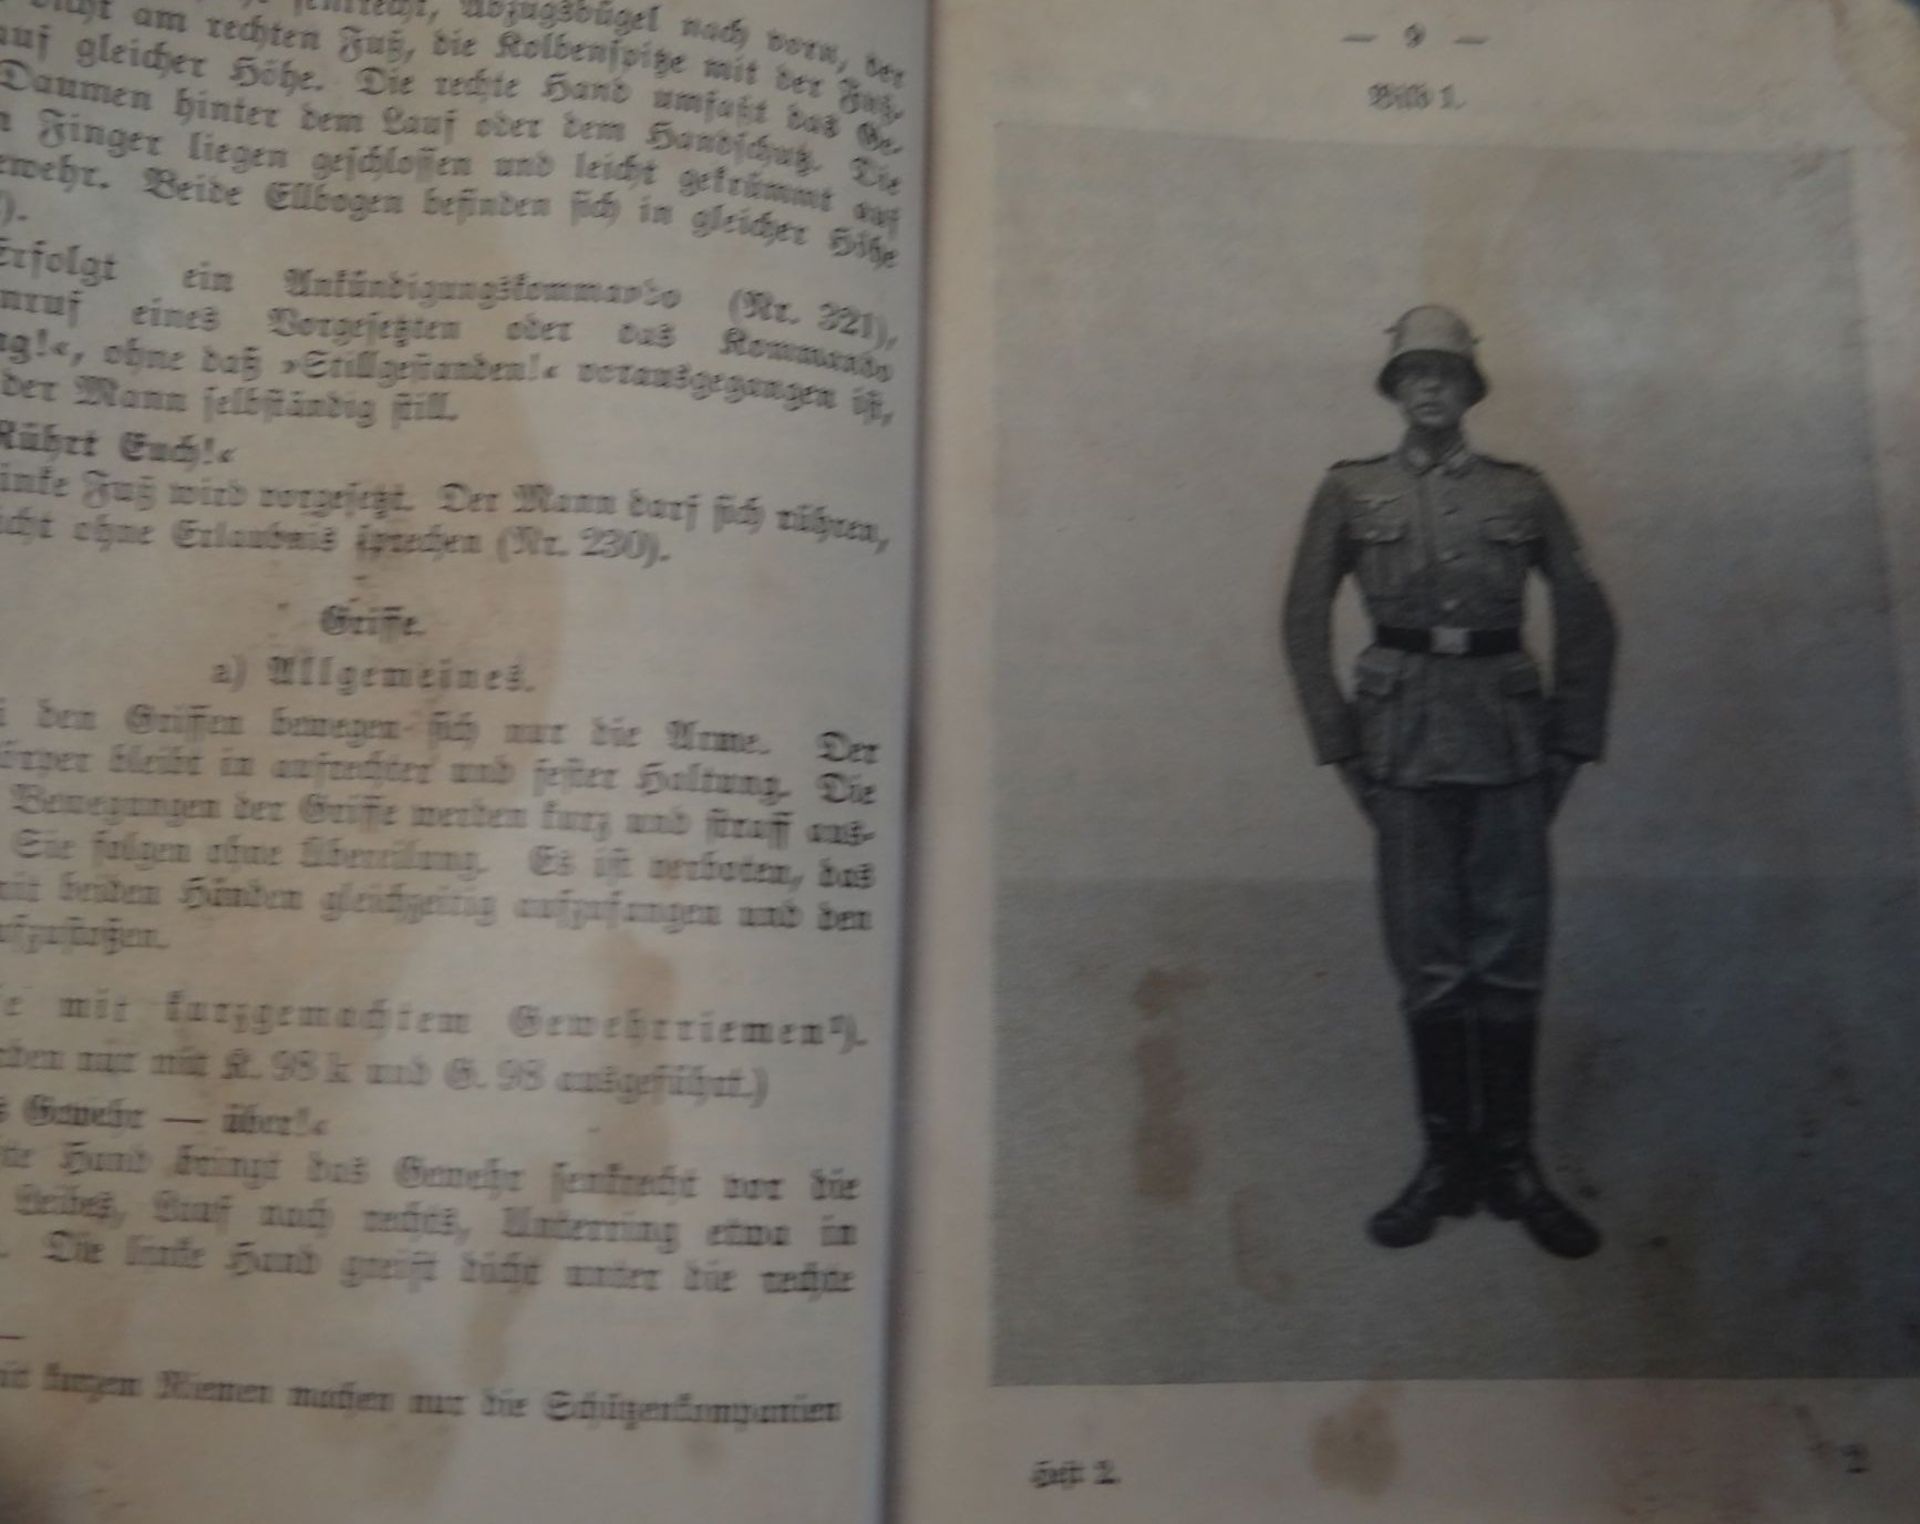 Büchlein, Ausbildung am Gewehr oder ähnliches?, Wehrmacht, Titelseite mit Titel etc. fehlt, 15x10 - Bild 3 aus 8